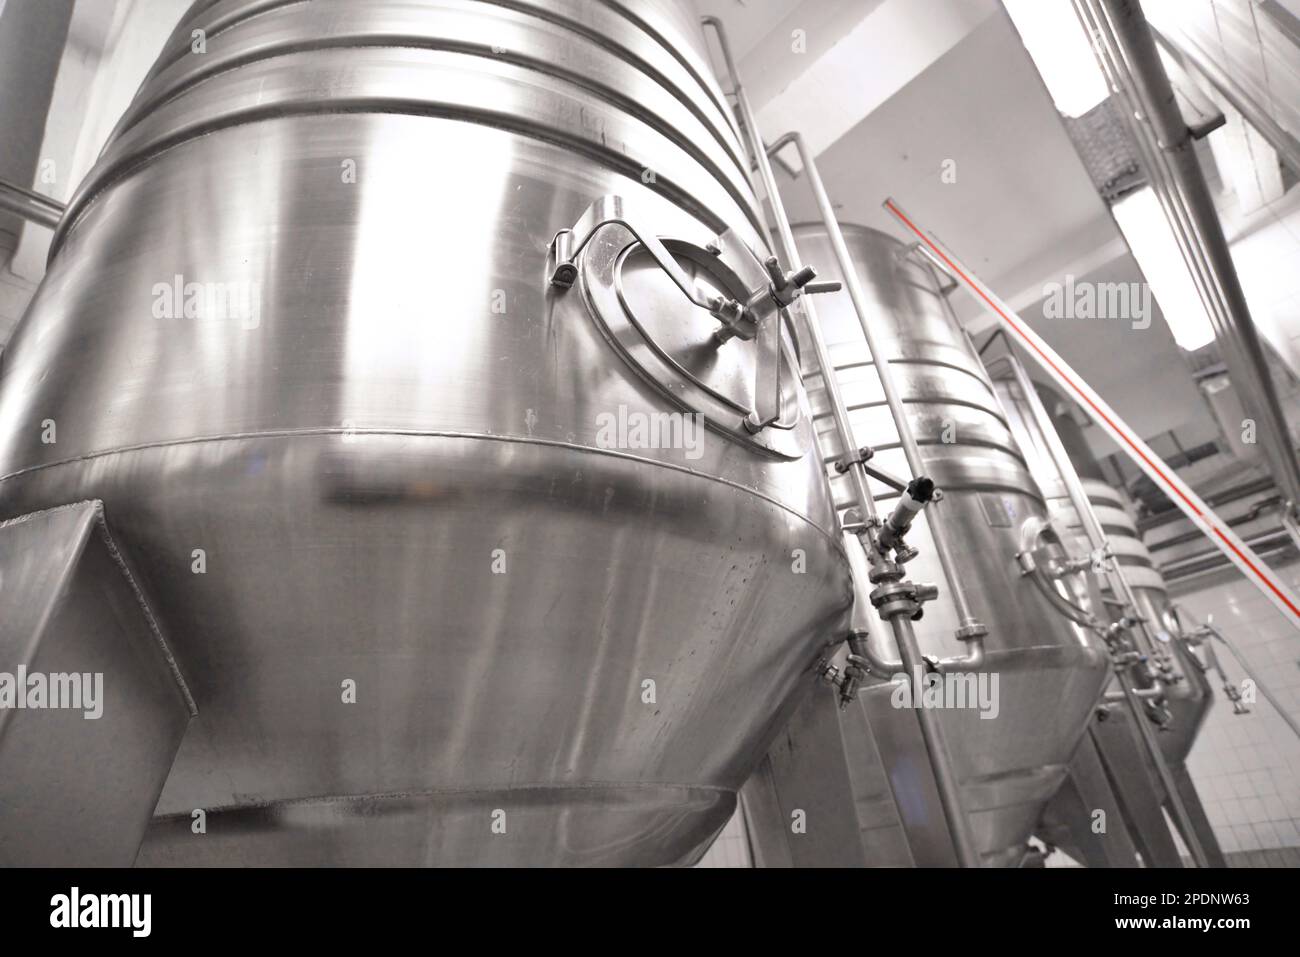 Brauerei in der Lebensmittelindustrie – Tanks und Anlagen für die Bierbrauerei Stockfoto